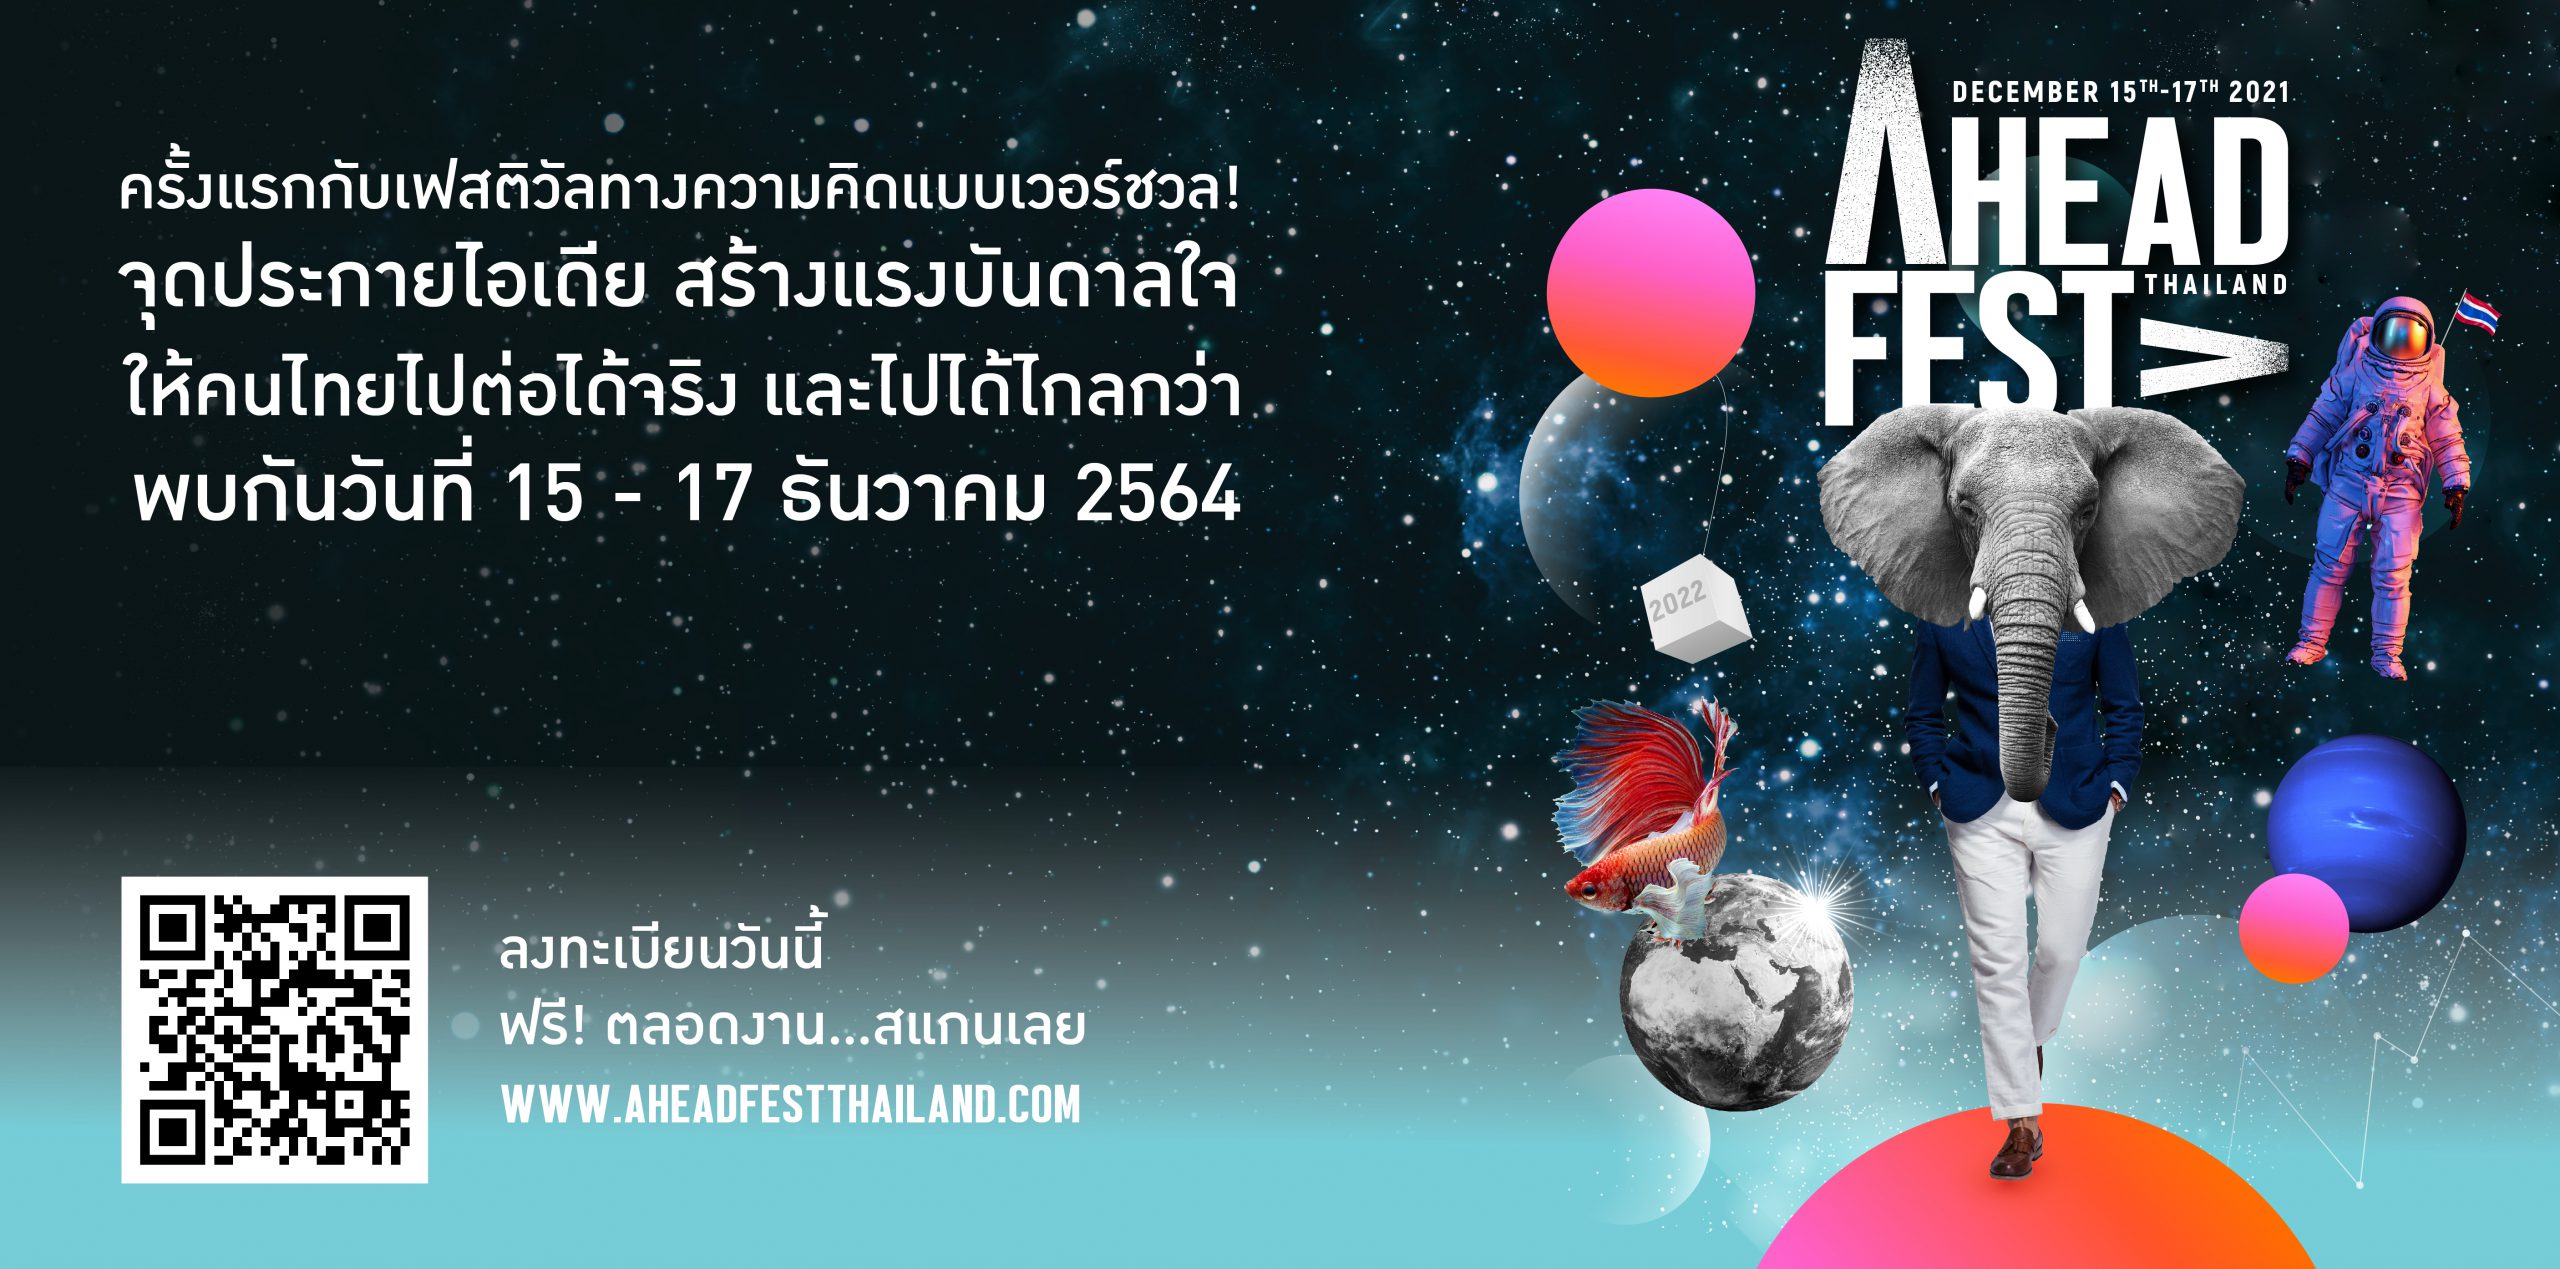 Ahead ! Fest Thailand ประสานพลังครั้งใหญ่ ผ่านการสร้างคอมมูนิตี้แห่งแรงบันดาลใจด้วย The Inspirer กว่า 50 ชีวิตและองค์กรพาร์ทเนอร์ที่อยากเห็นประเทศไทยไปไกล ที่ WWW.AHEADFESTTHAILAND.COM